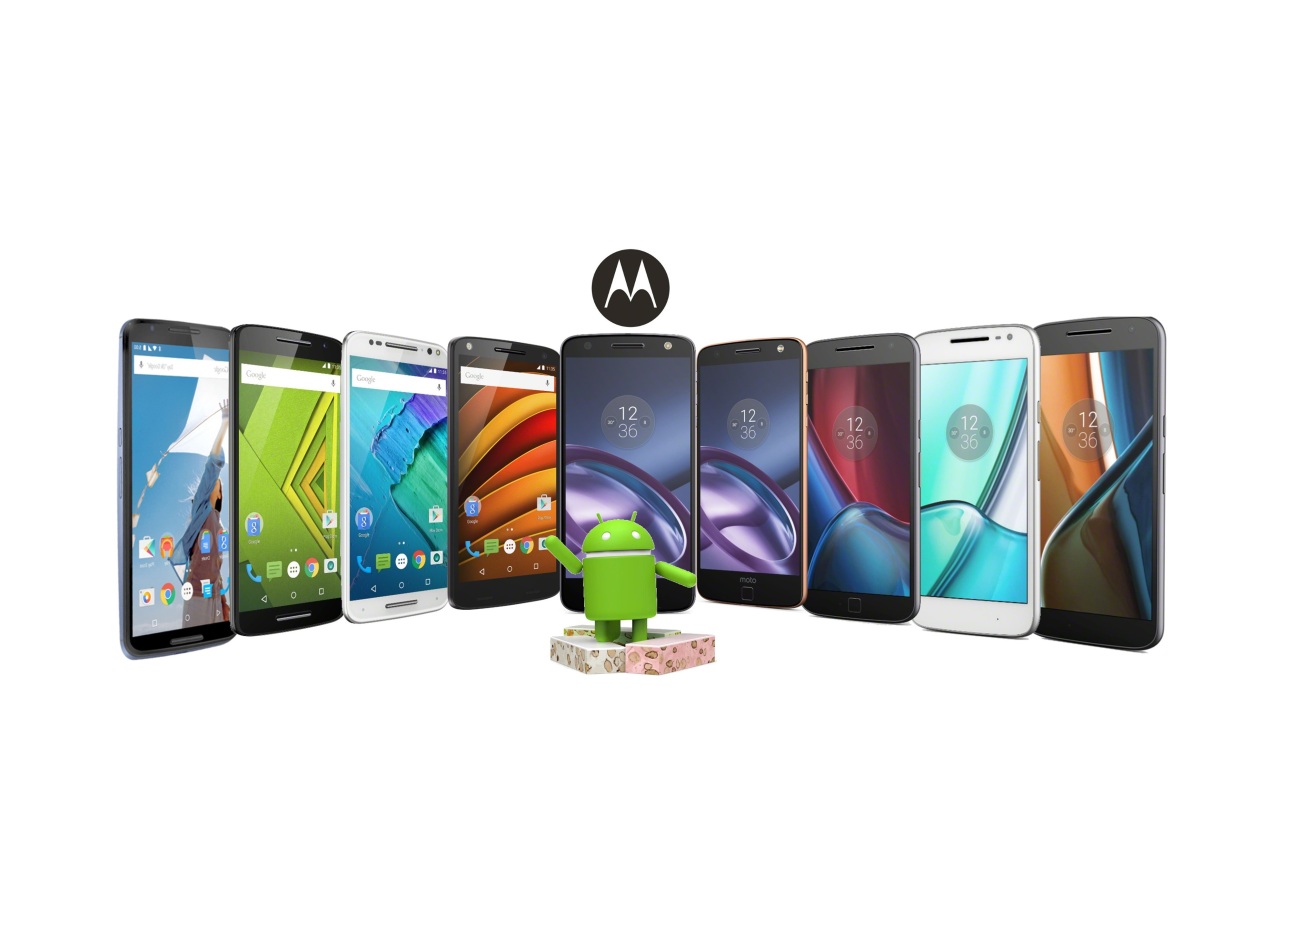 Rodzina smartfonów Lenovo z serii Moto, które otrzymają Androida 7.0 Nougat - fot. mat. pras.